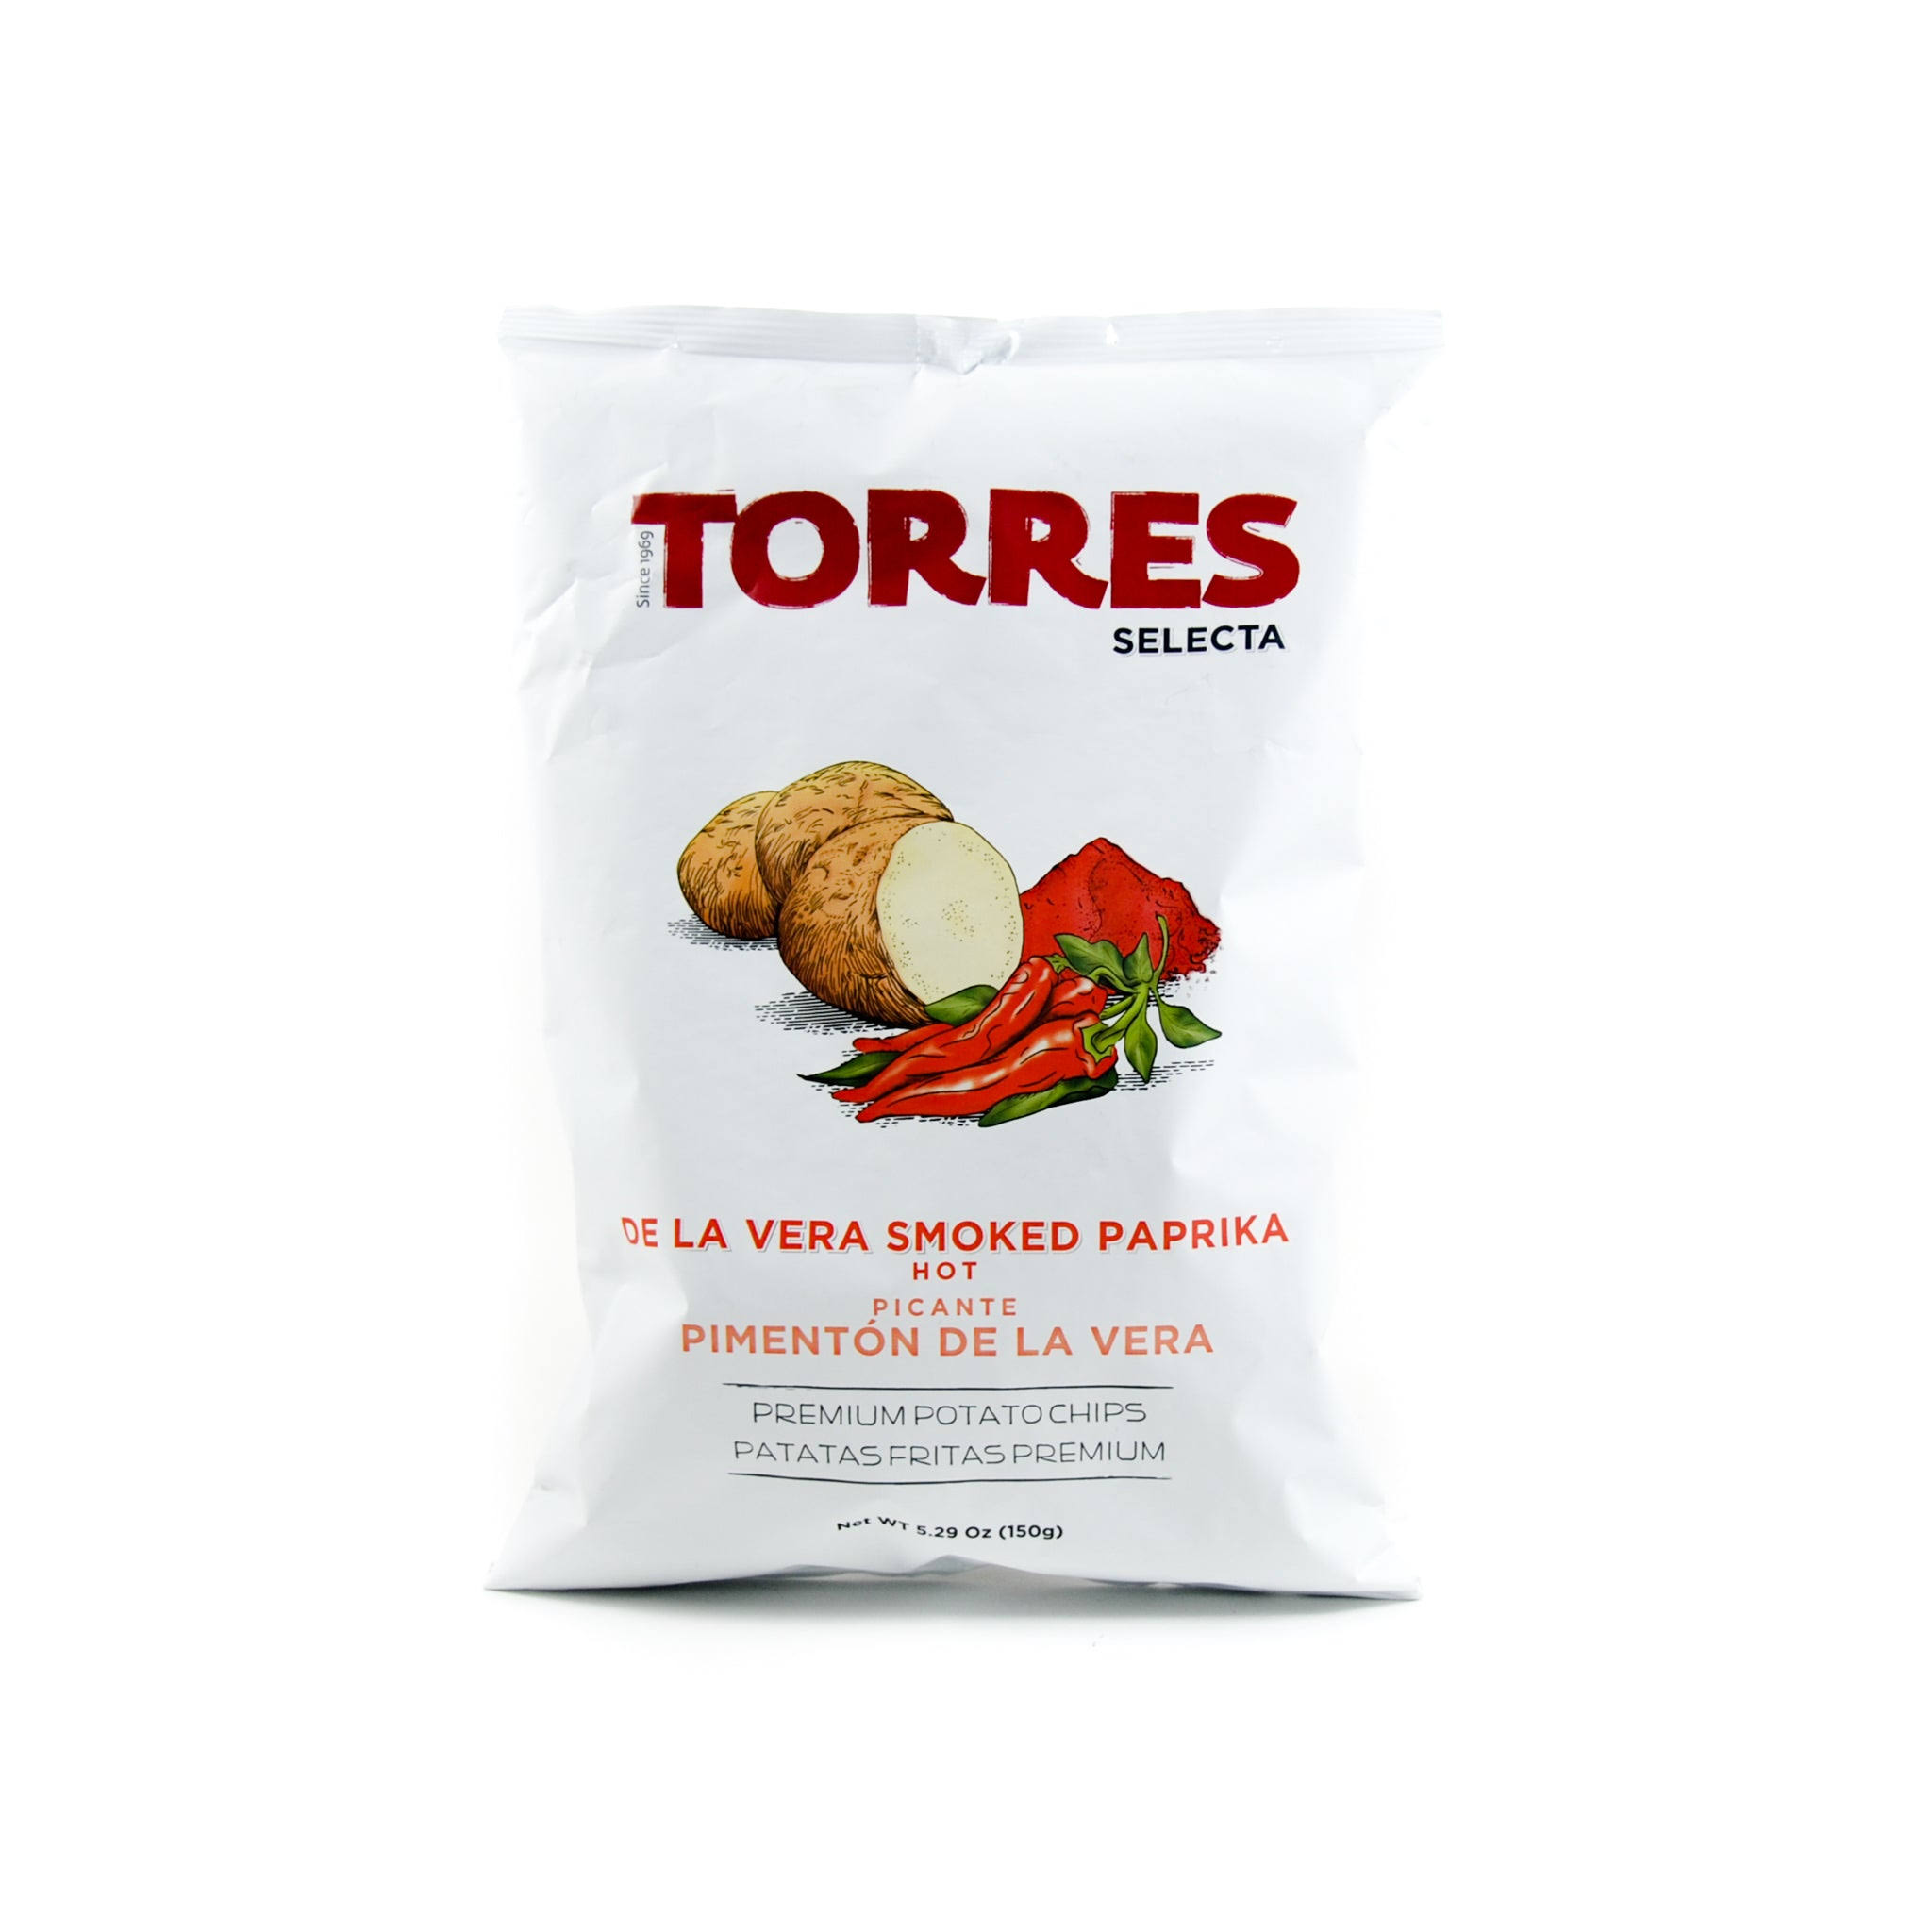 Torres Smoked Paprika Crisps 150g